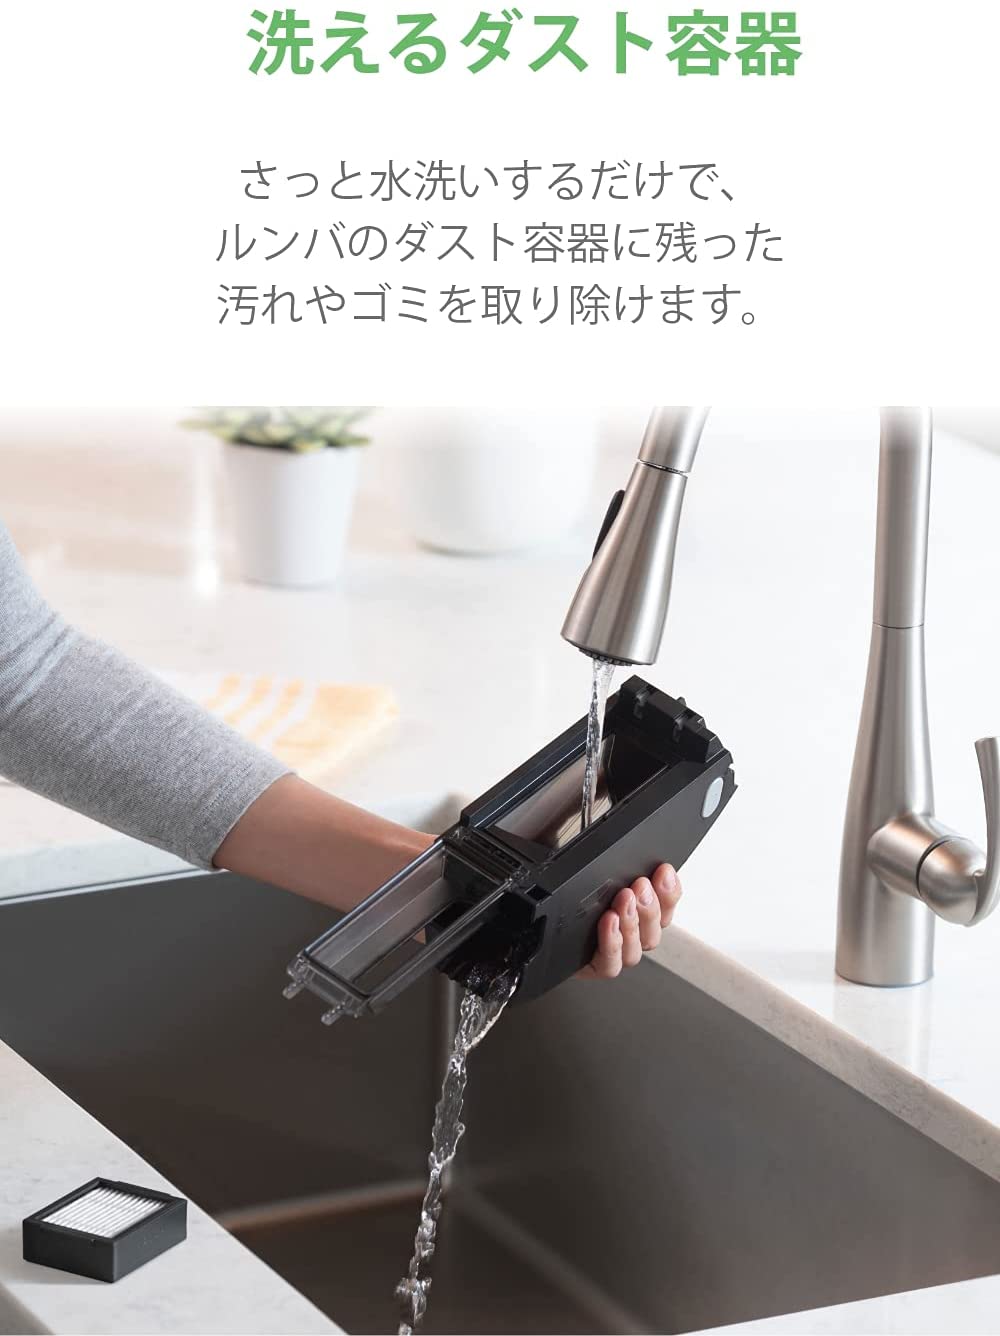 ☆新品☆ルンバ E5 アイロボット ロボット掃除機 水洗い